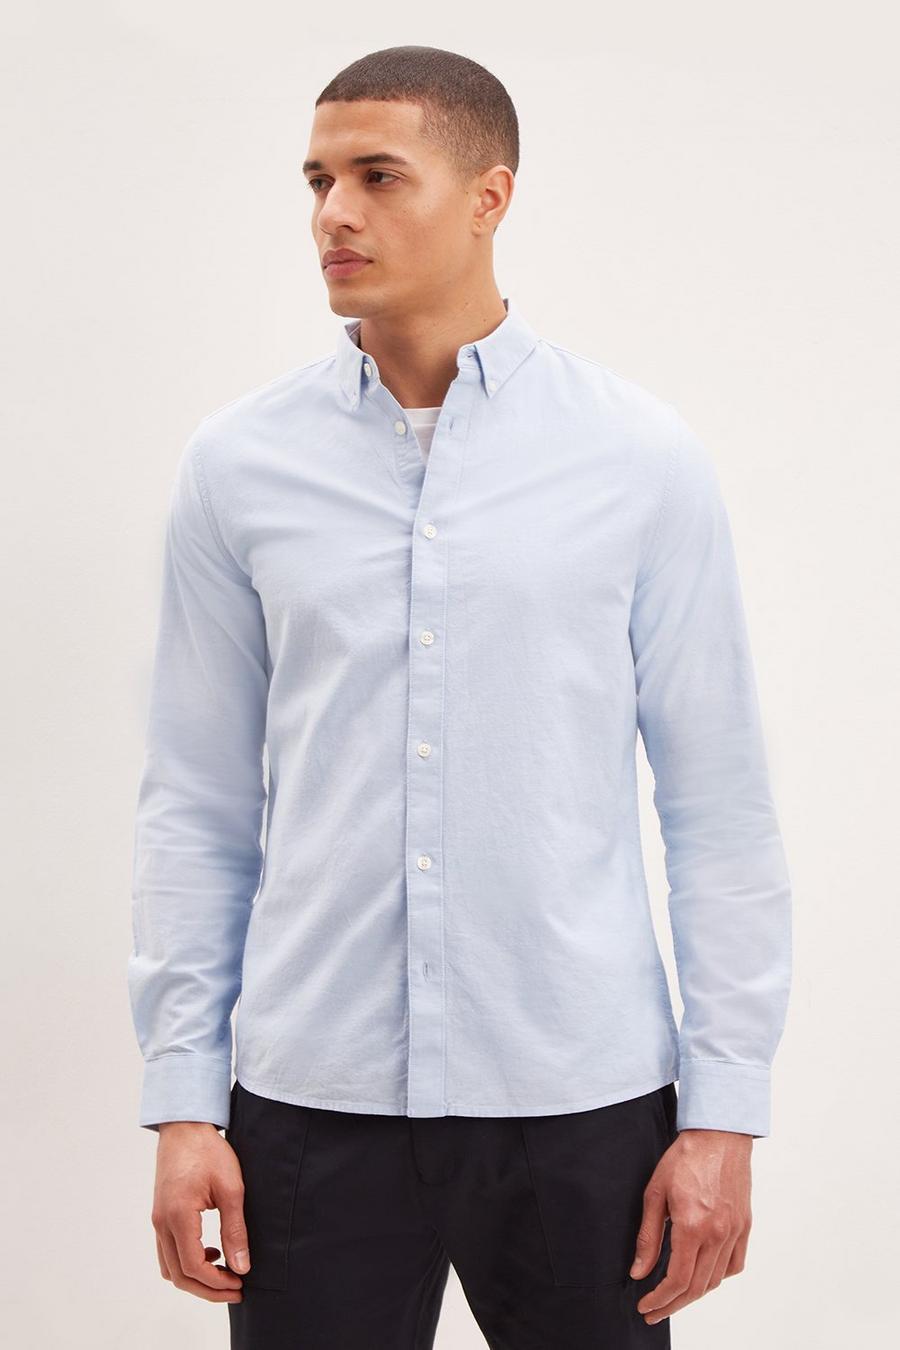 Long Sleeve Light Blue Oxford Shirt